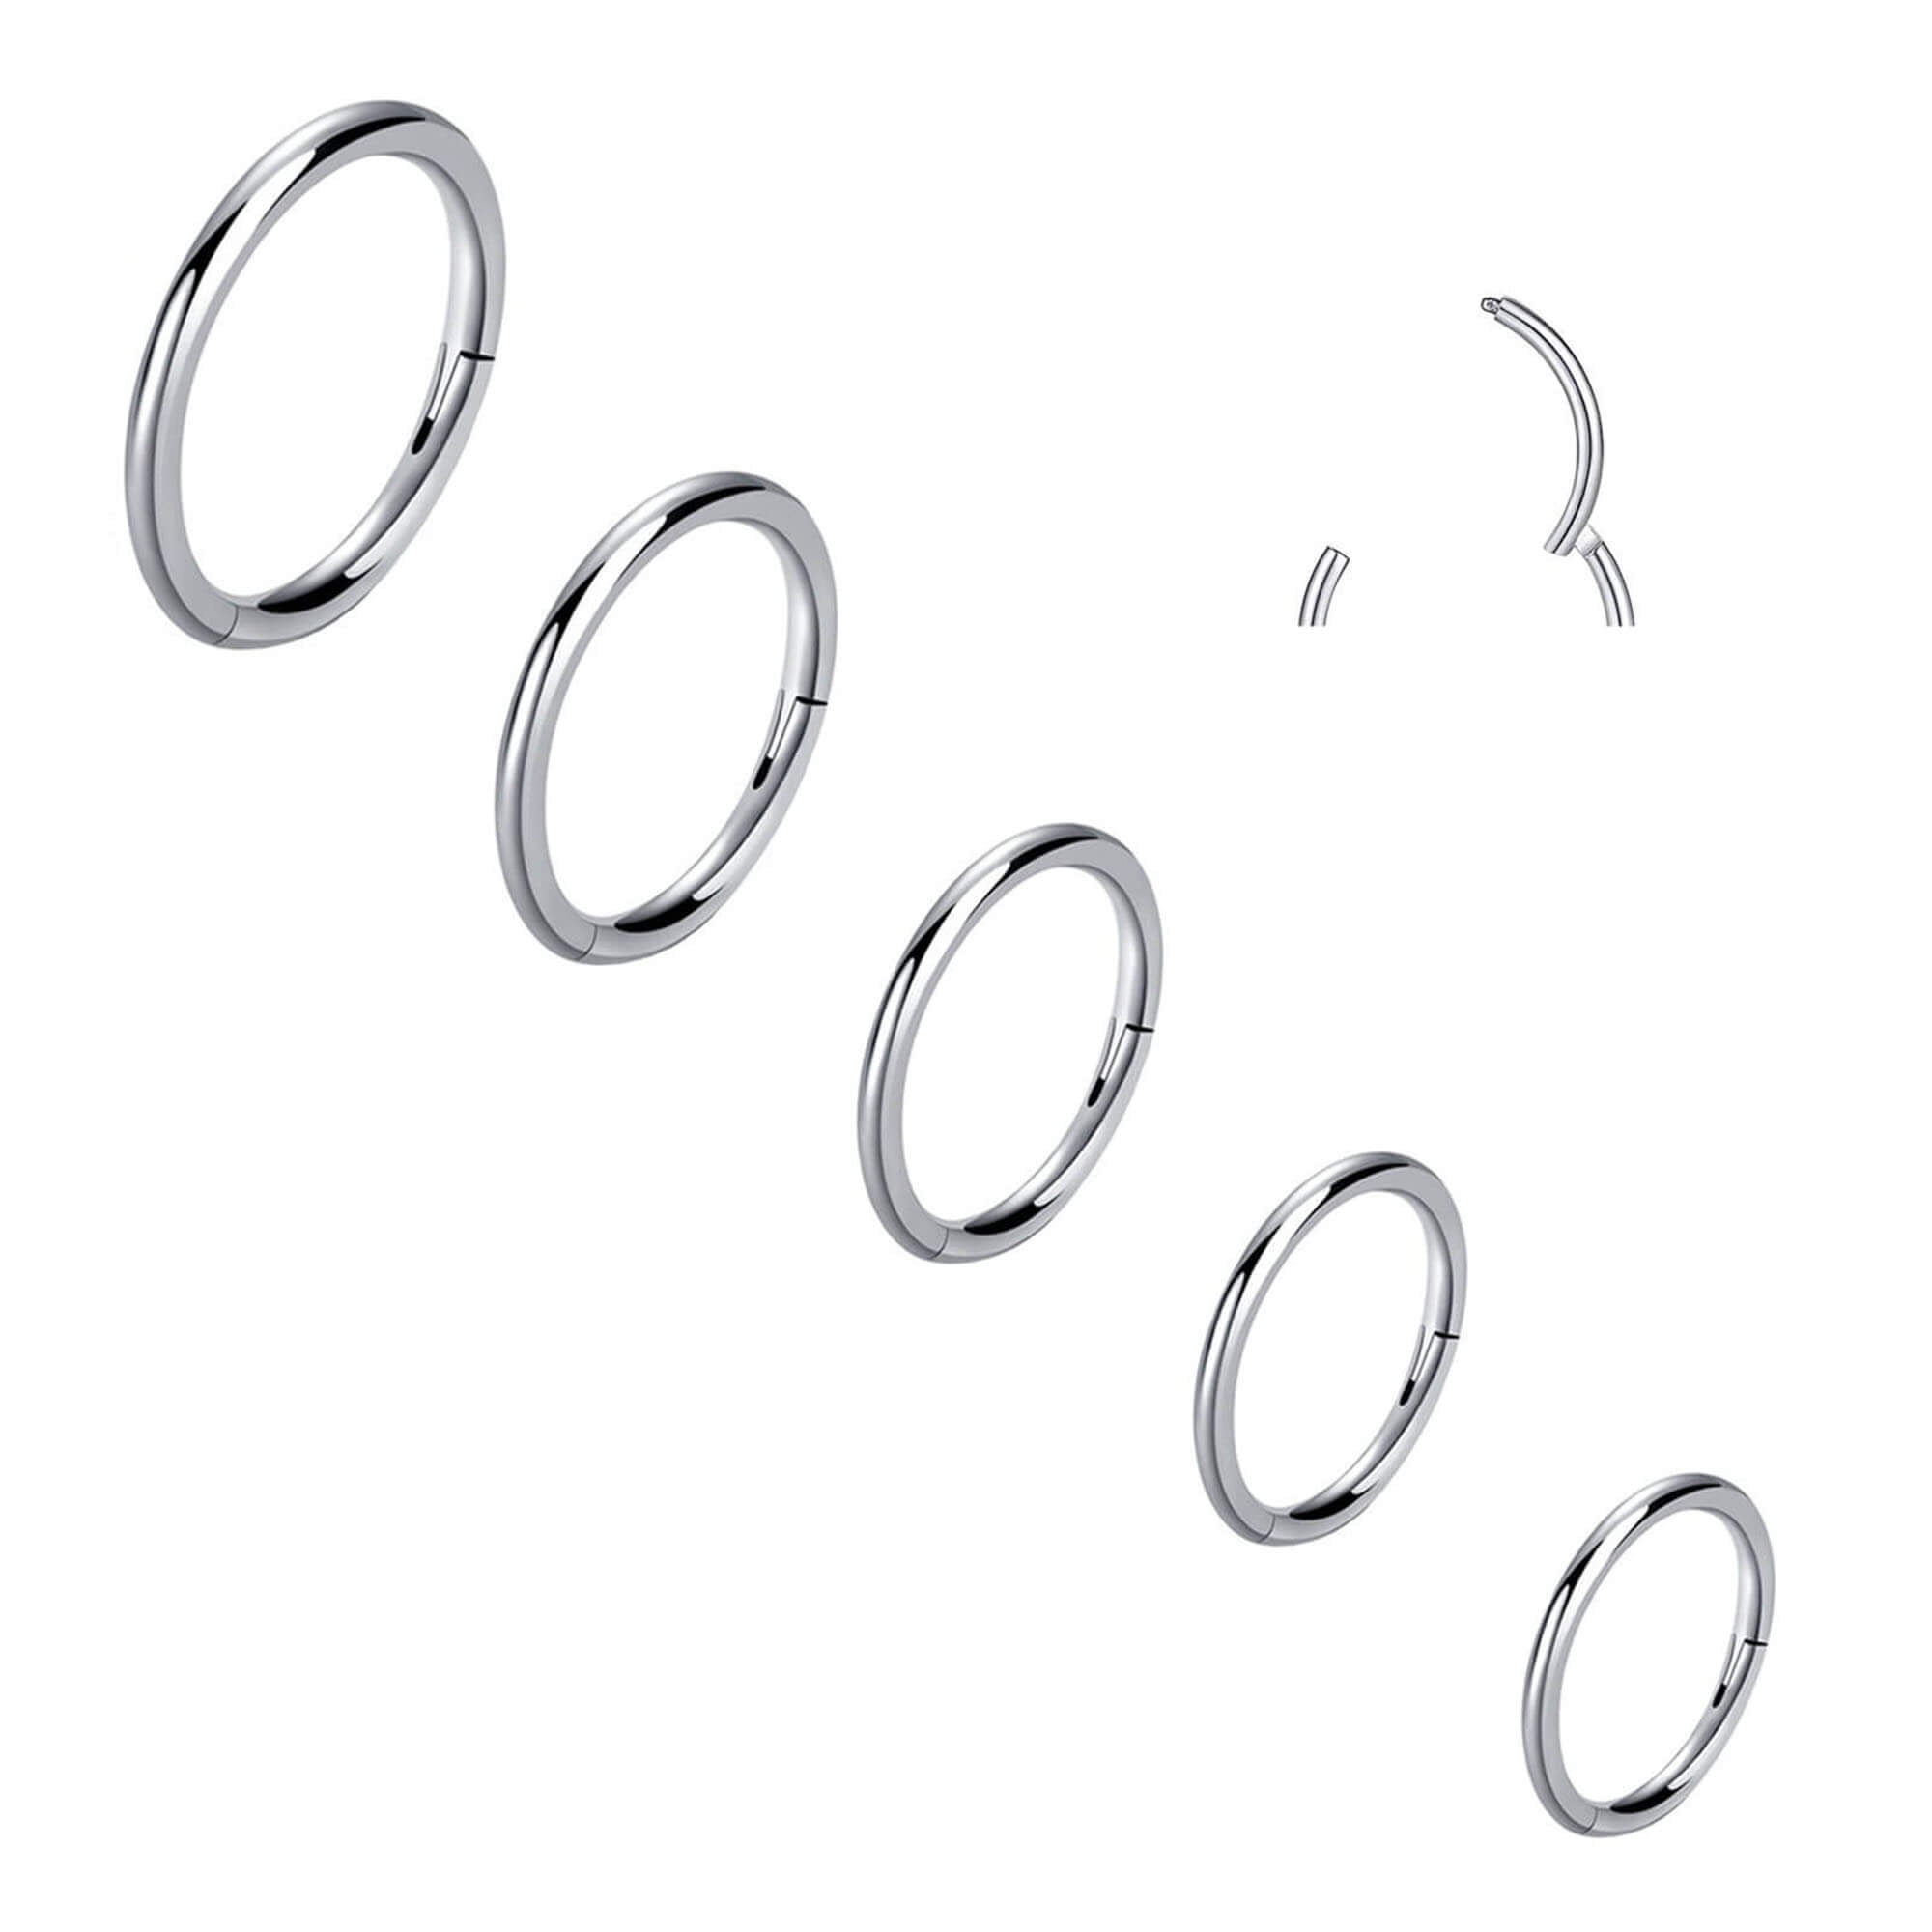 1Pair Stainless Steel Hoop Earrings for Men Women Cartilage Nose Ring  Piercing | eBay